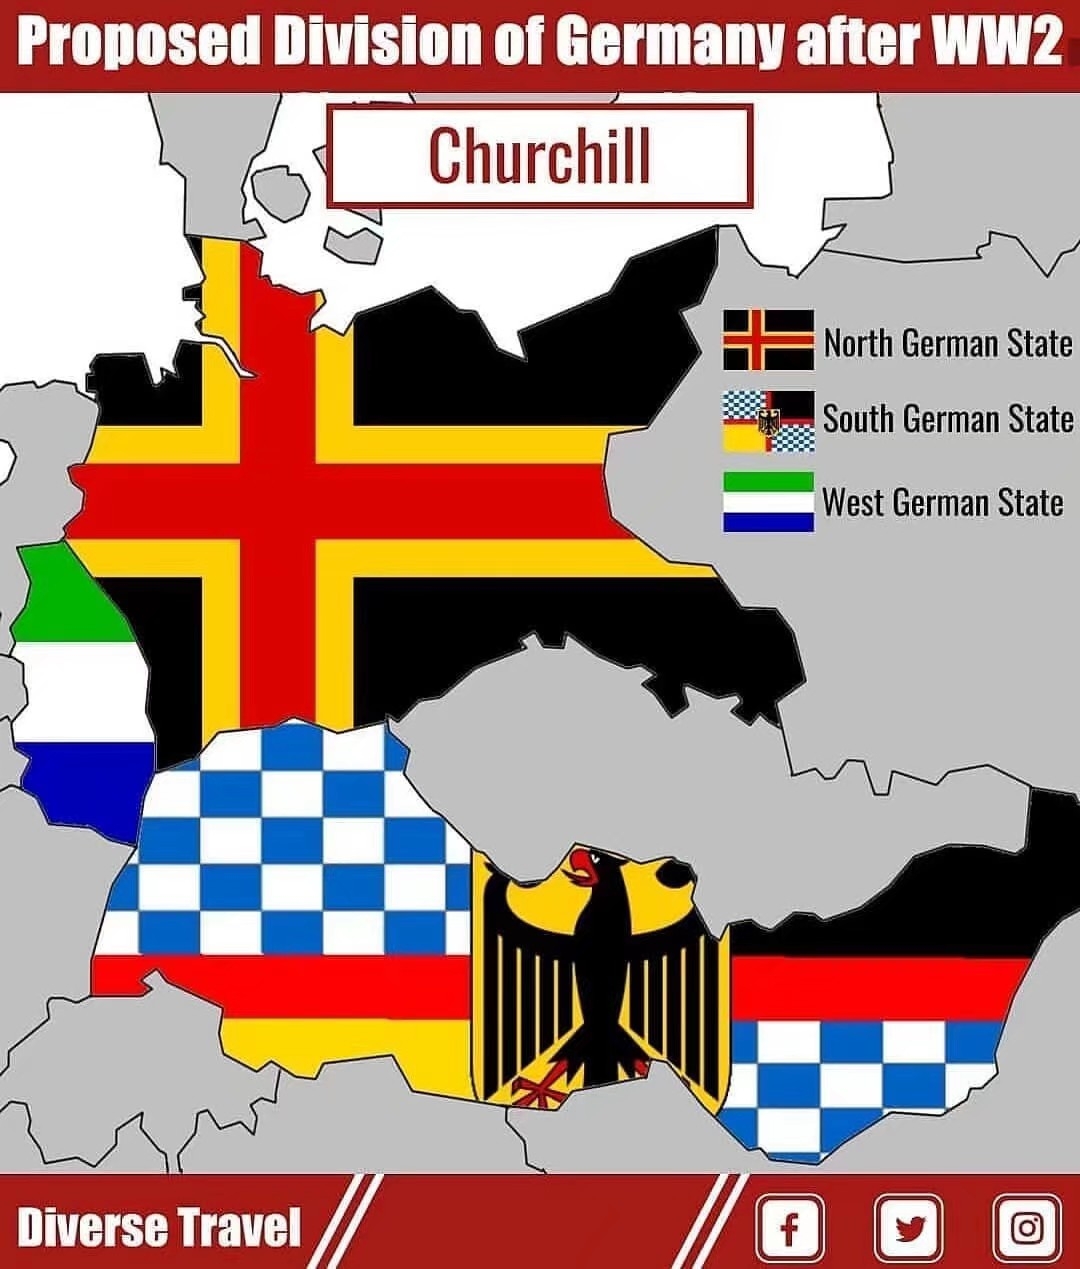 而且采用的旗帜和拿破仑打败神圣罗马帝国诸国后,成立的莱茵联邦傀儡